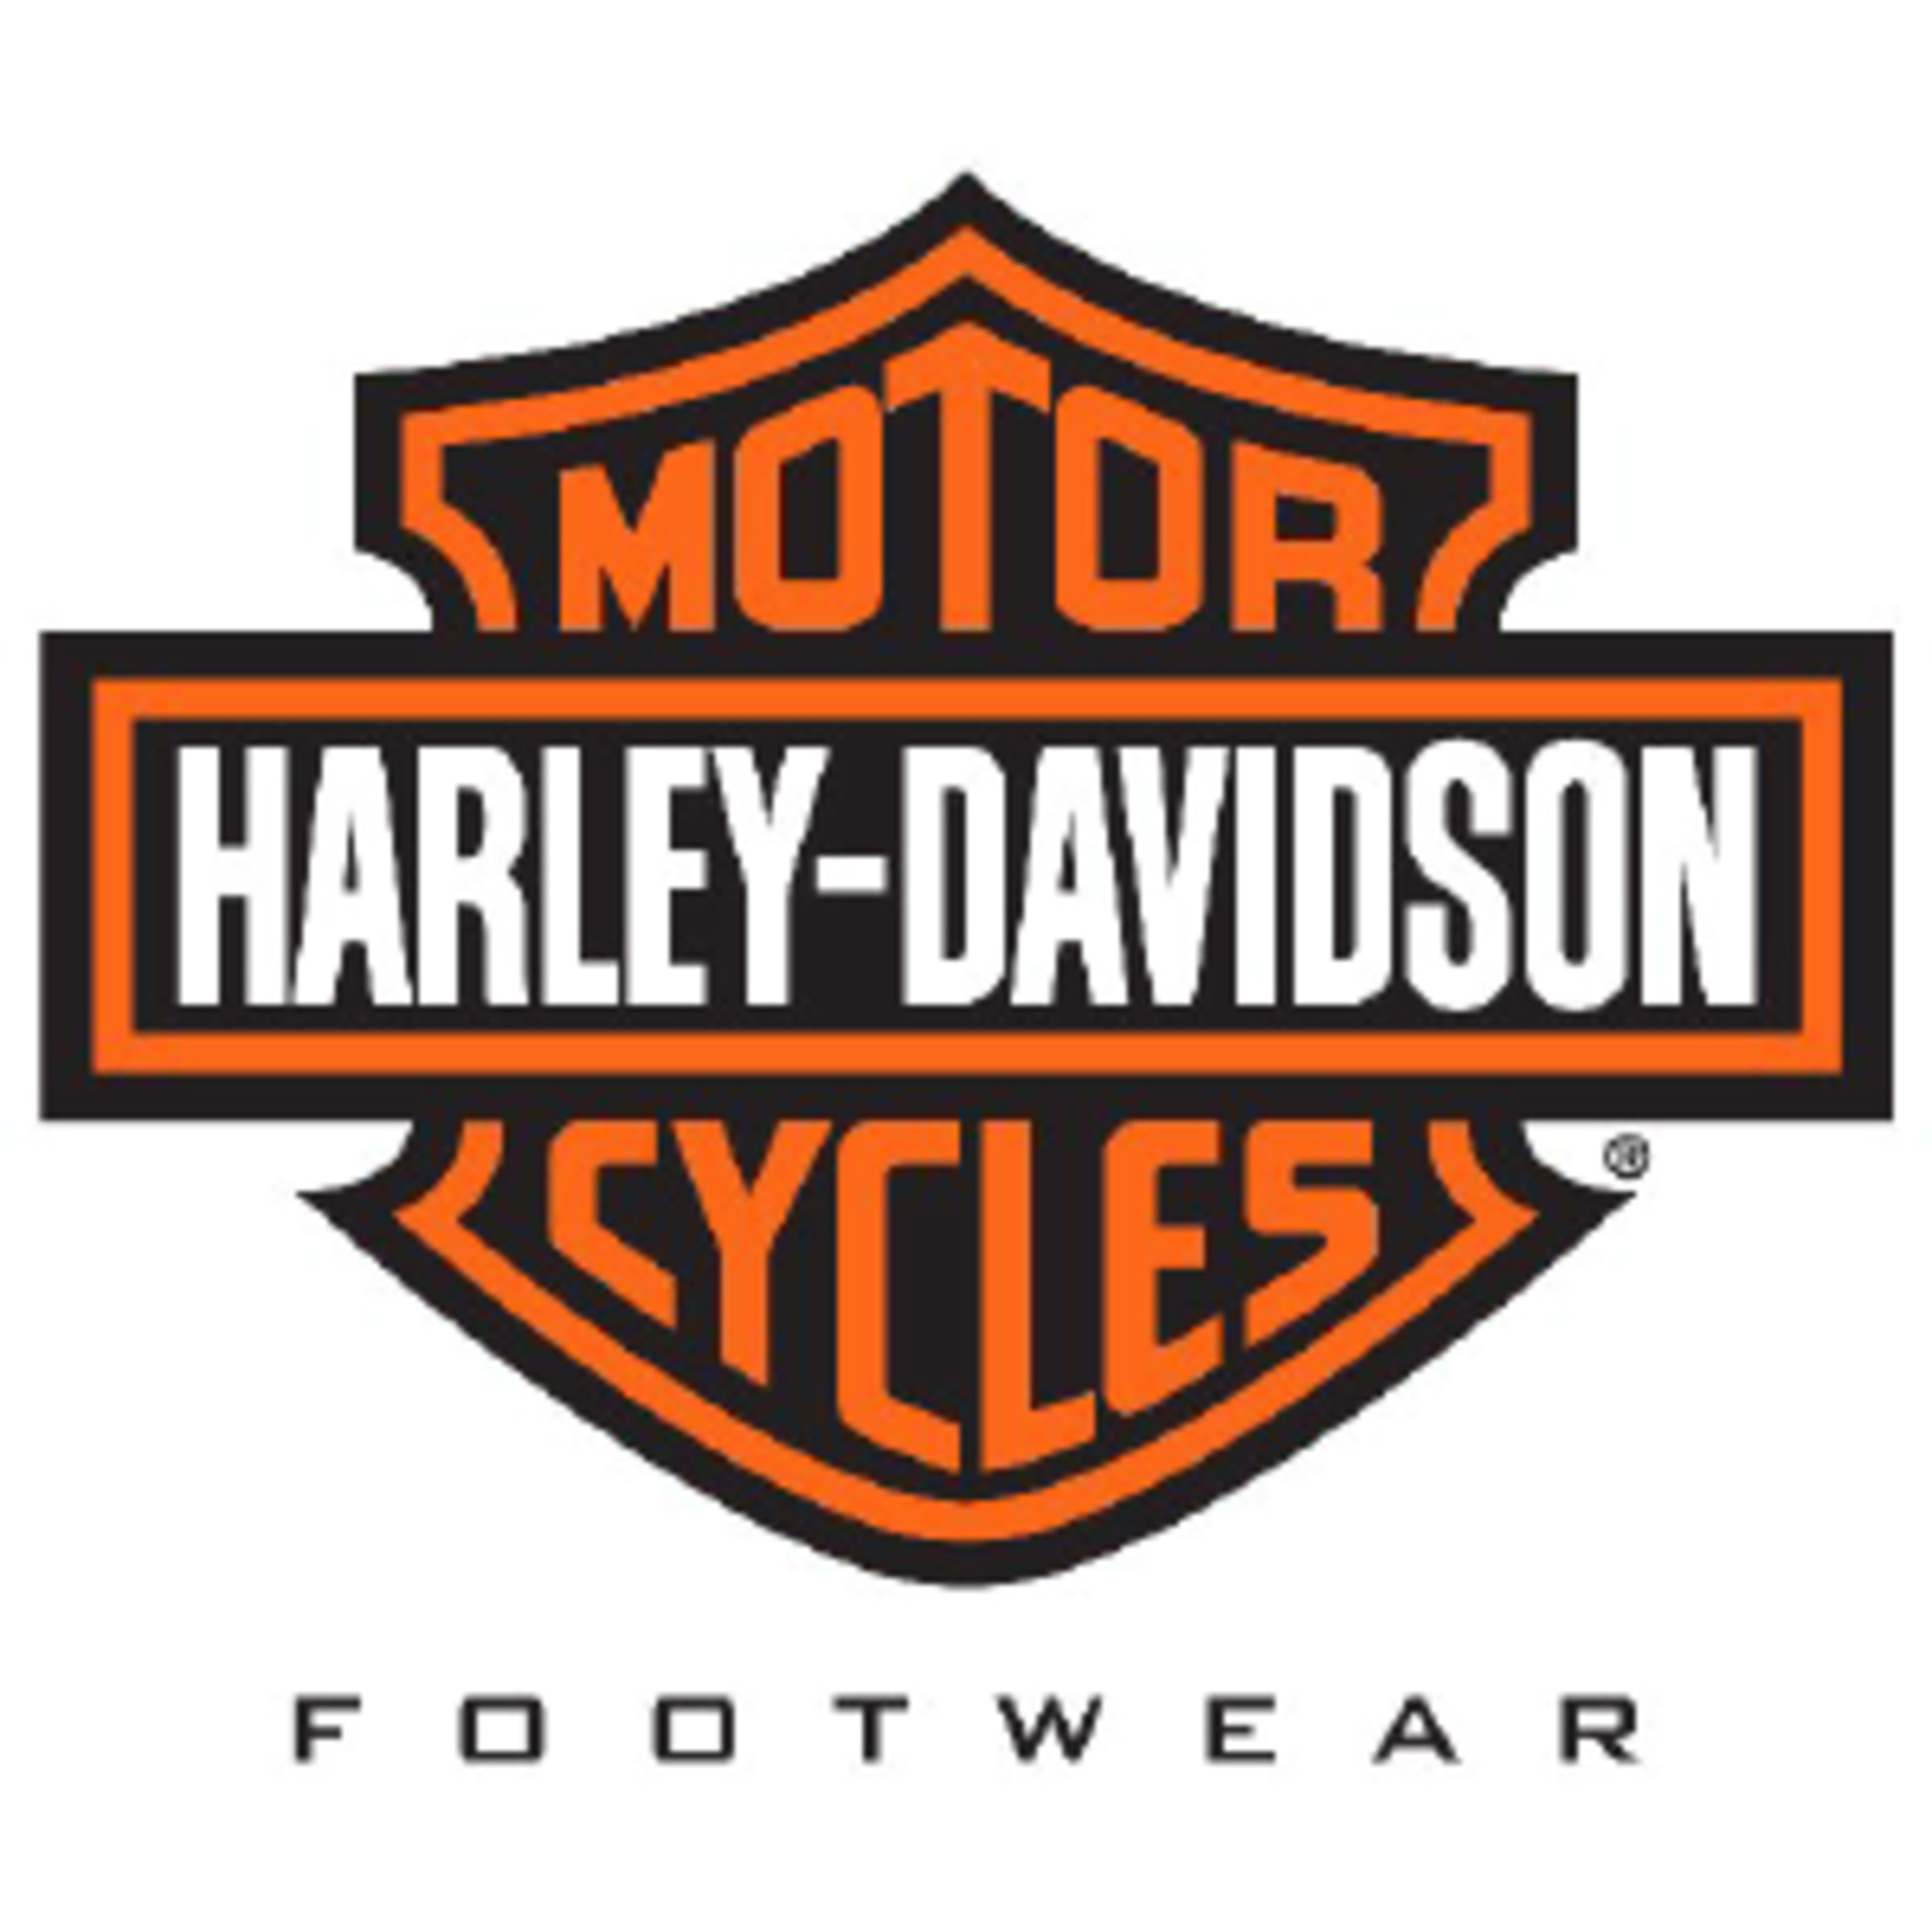 Harley Davidson FootwearCode